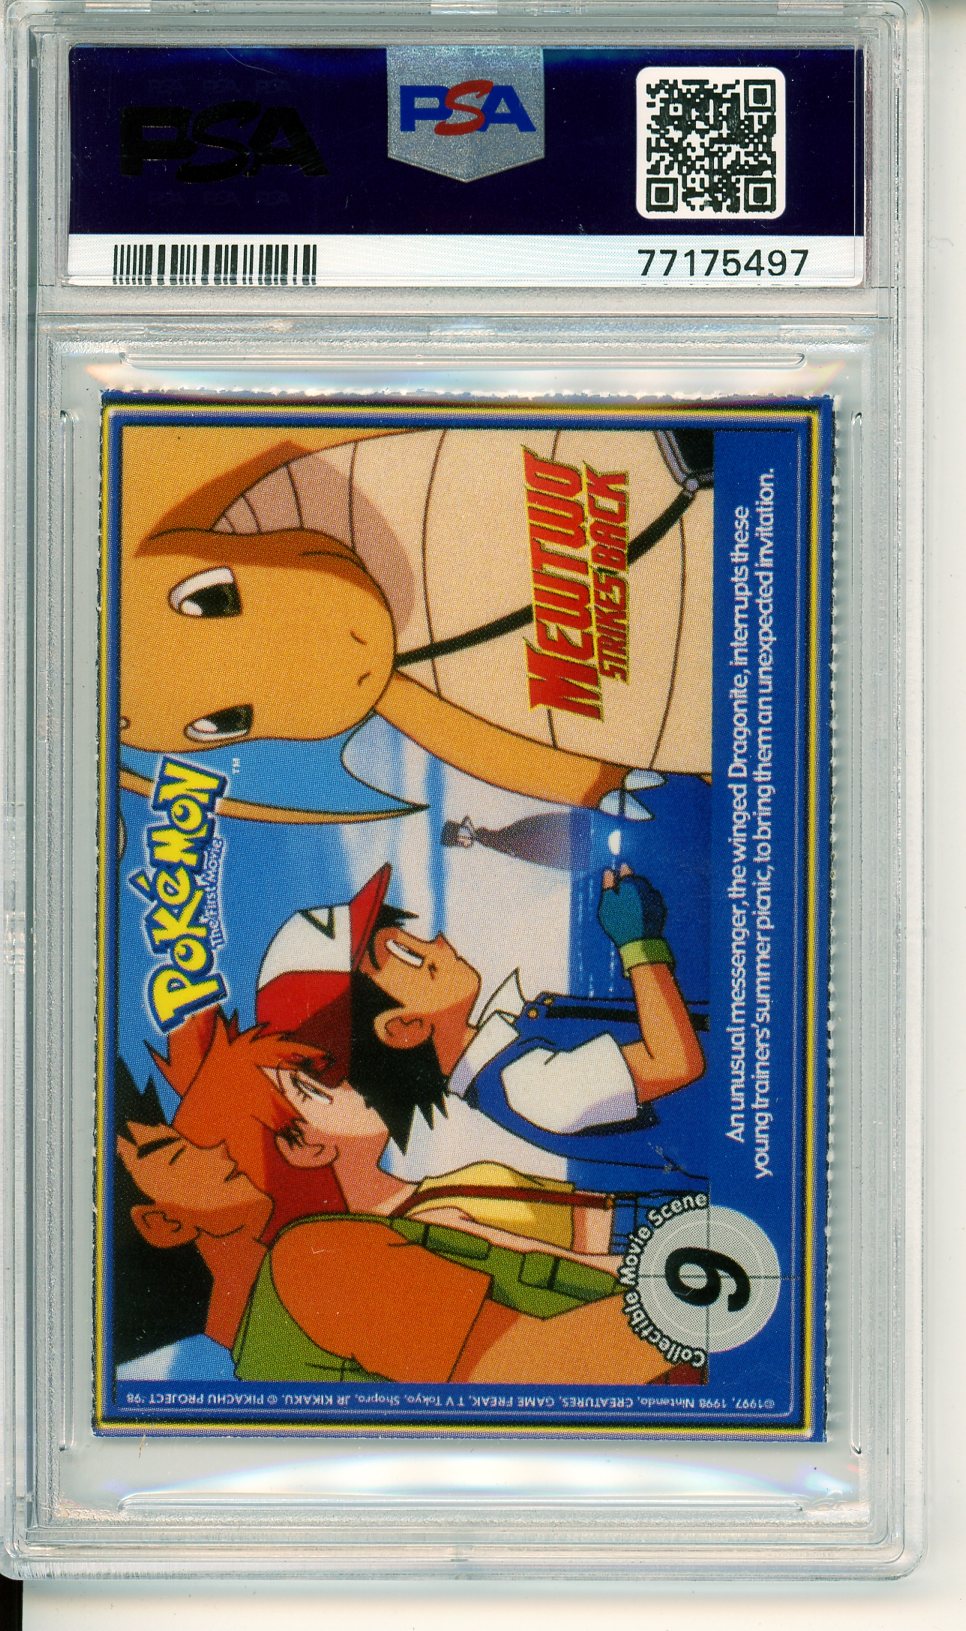 1999 Pokemon Gyarados Burger King Perforated Rare Promo Card PSA 7